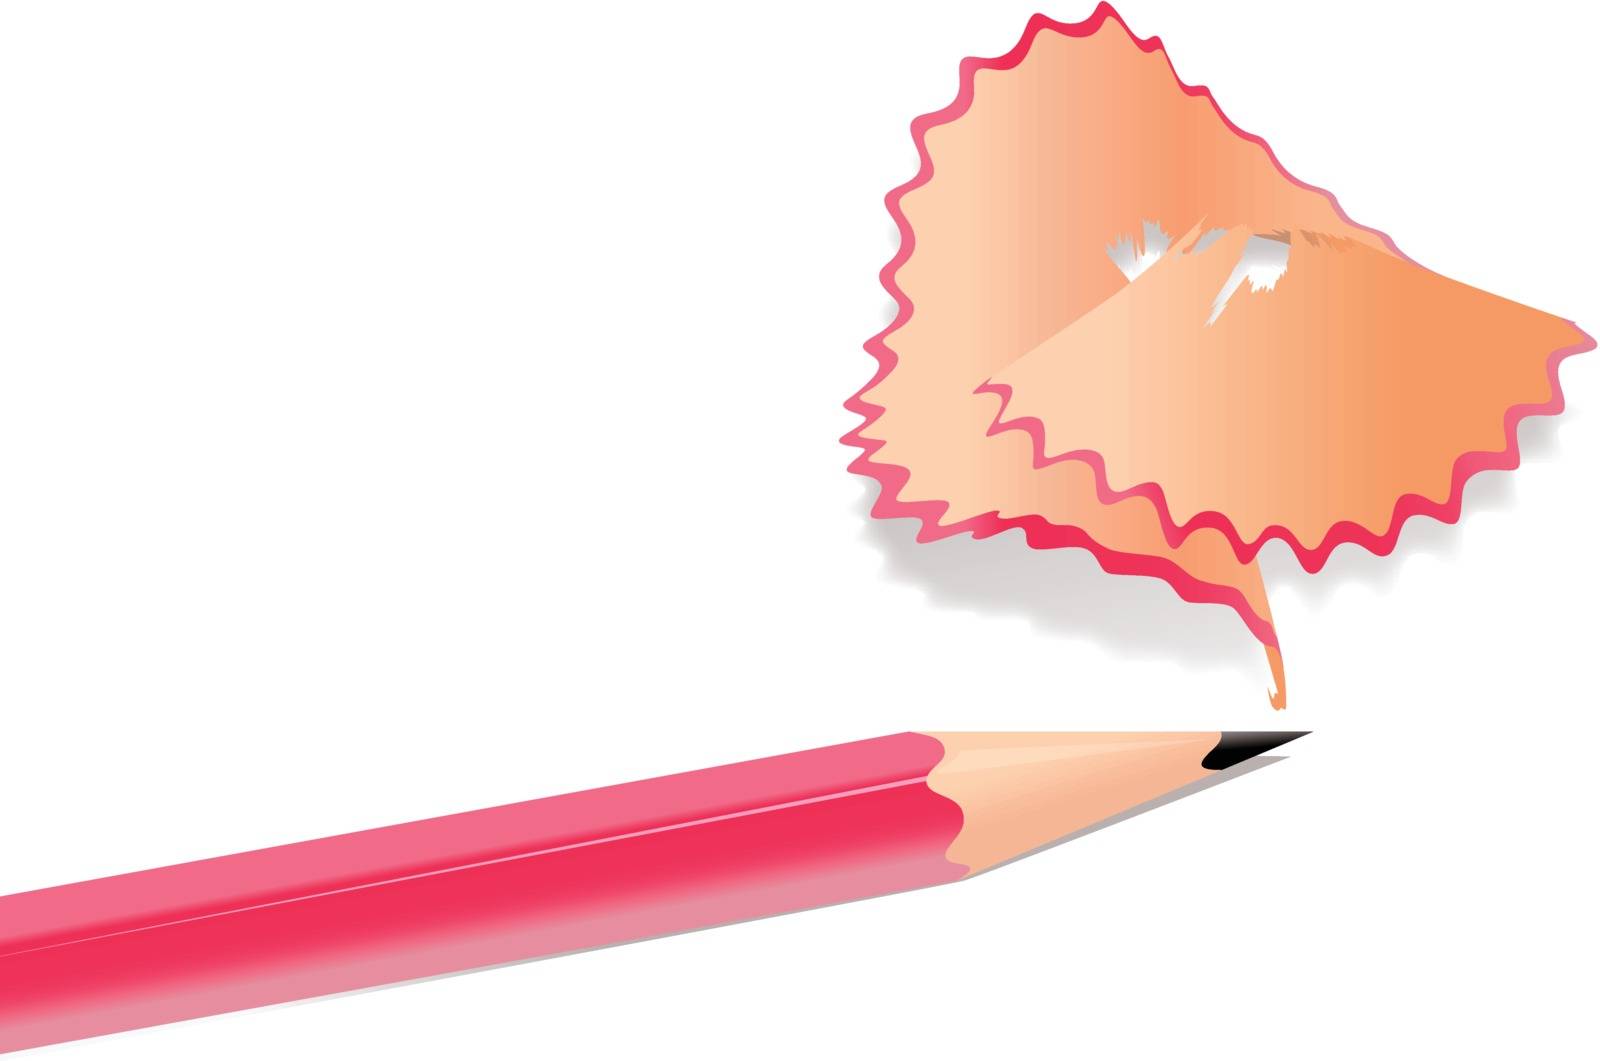 Illustration of pencil shavings on white